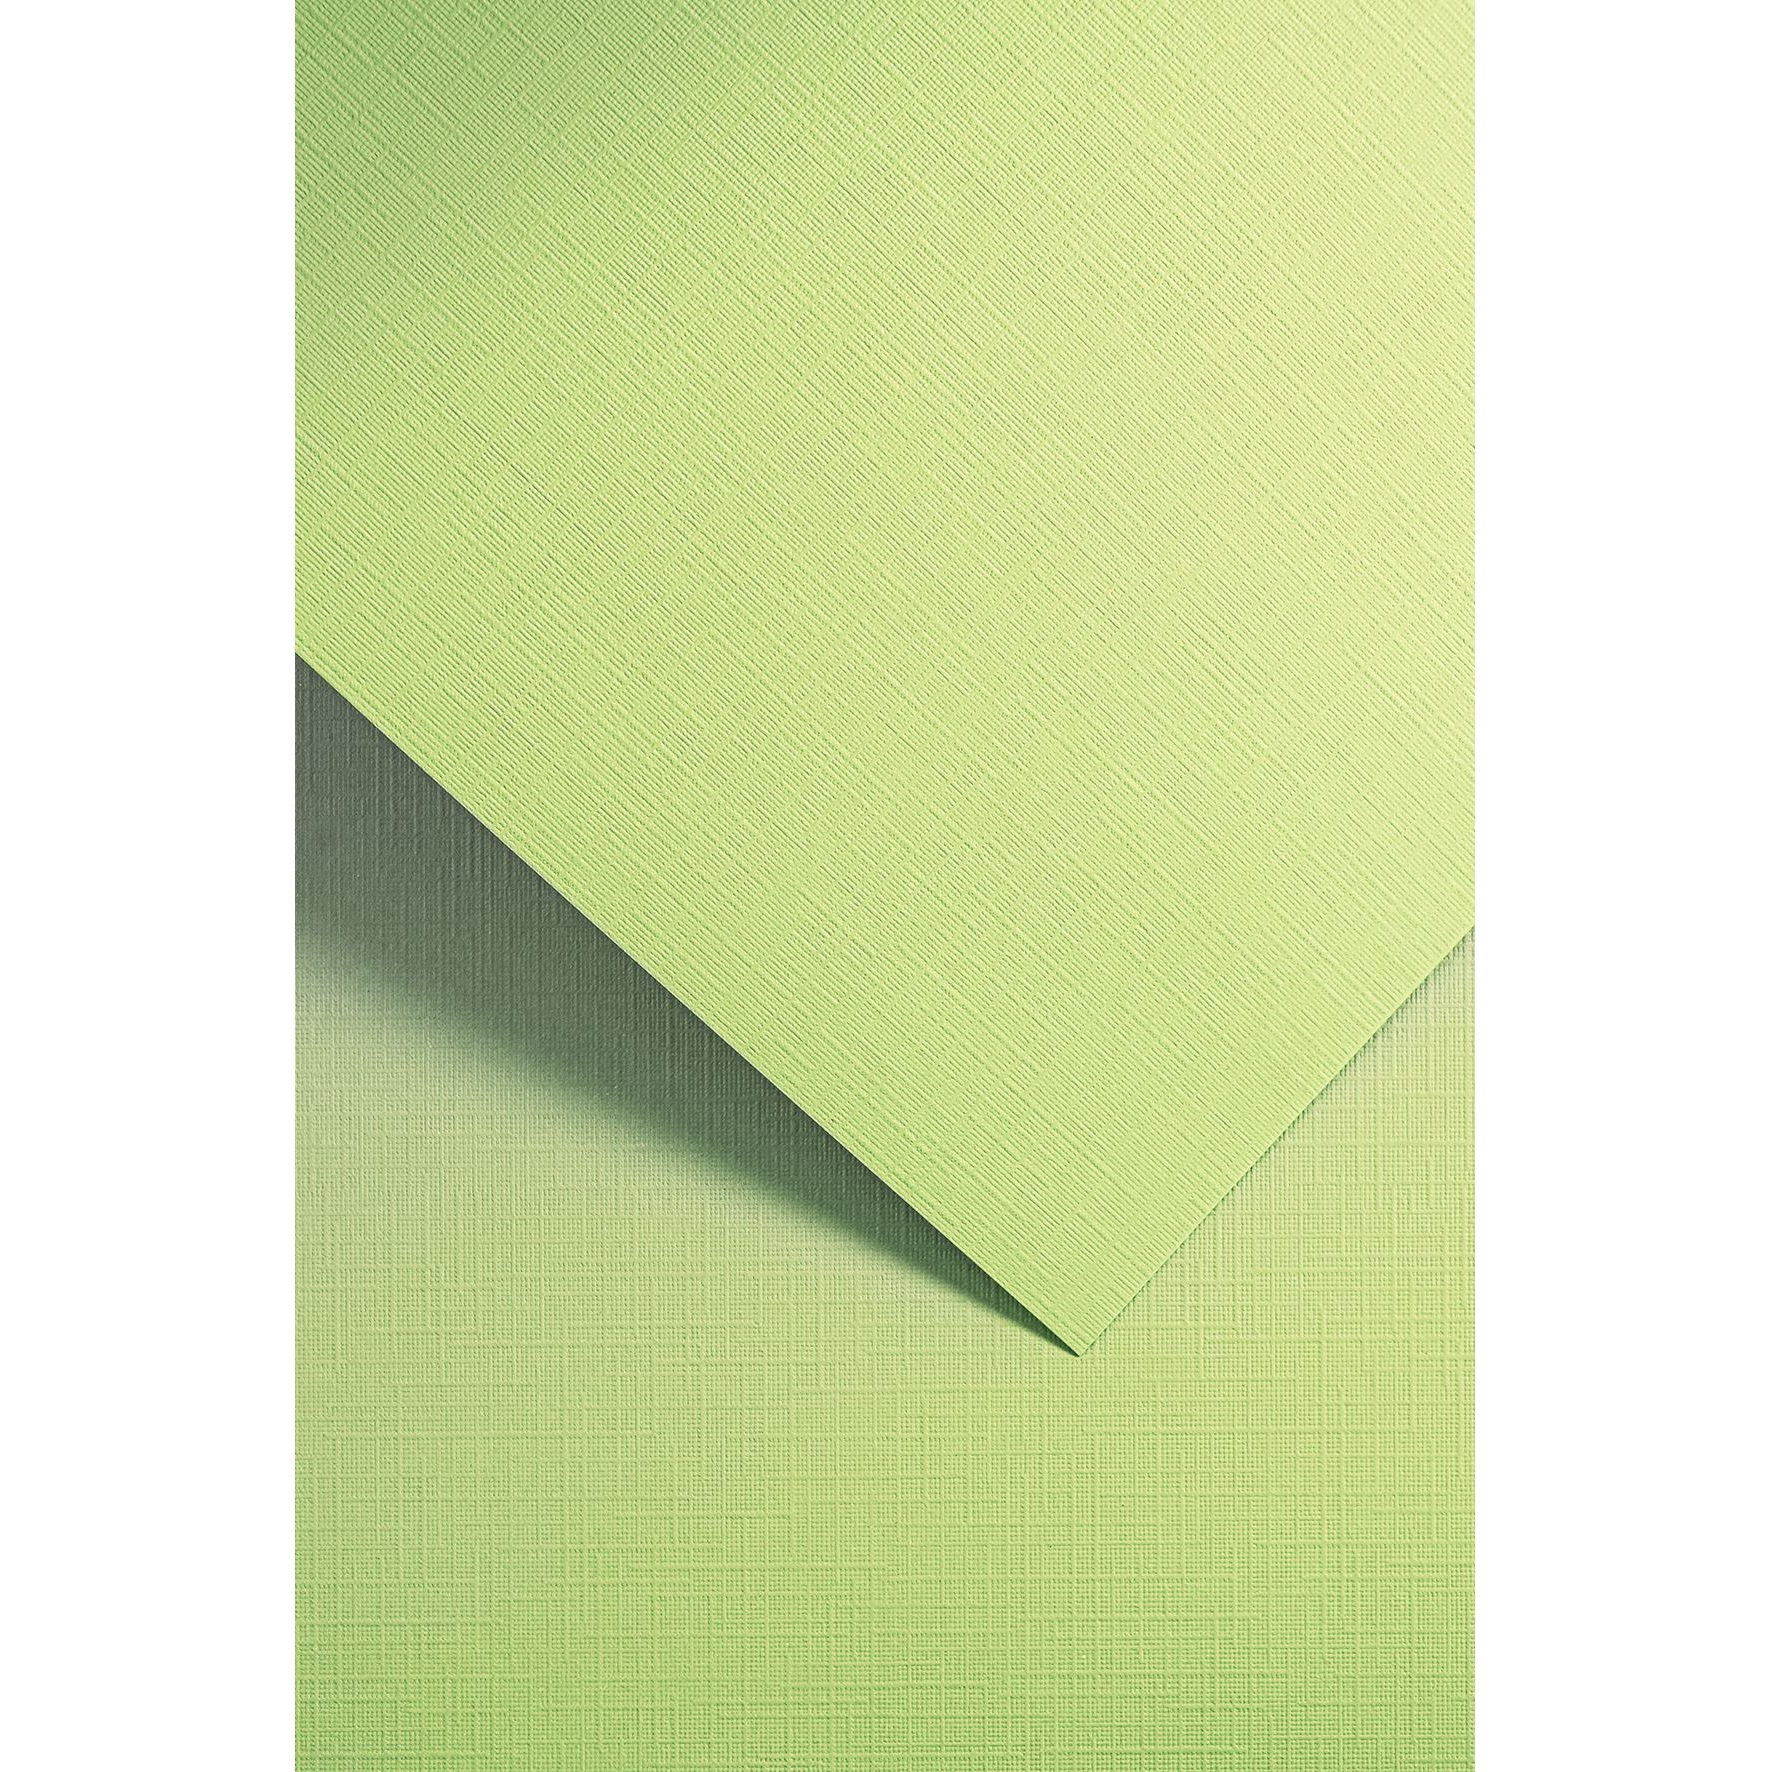 Ozdobný papír Holland, zelený, 220g, 20ks